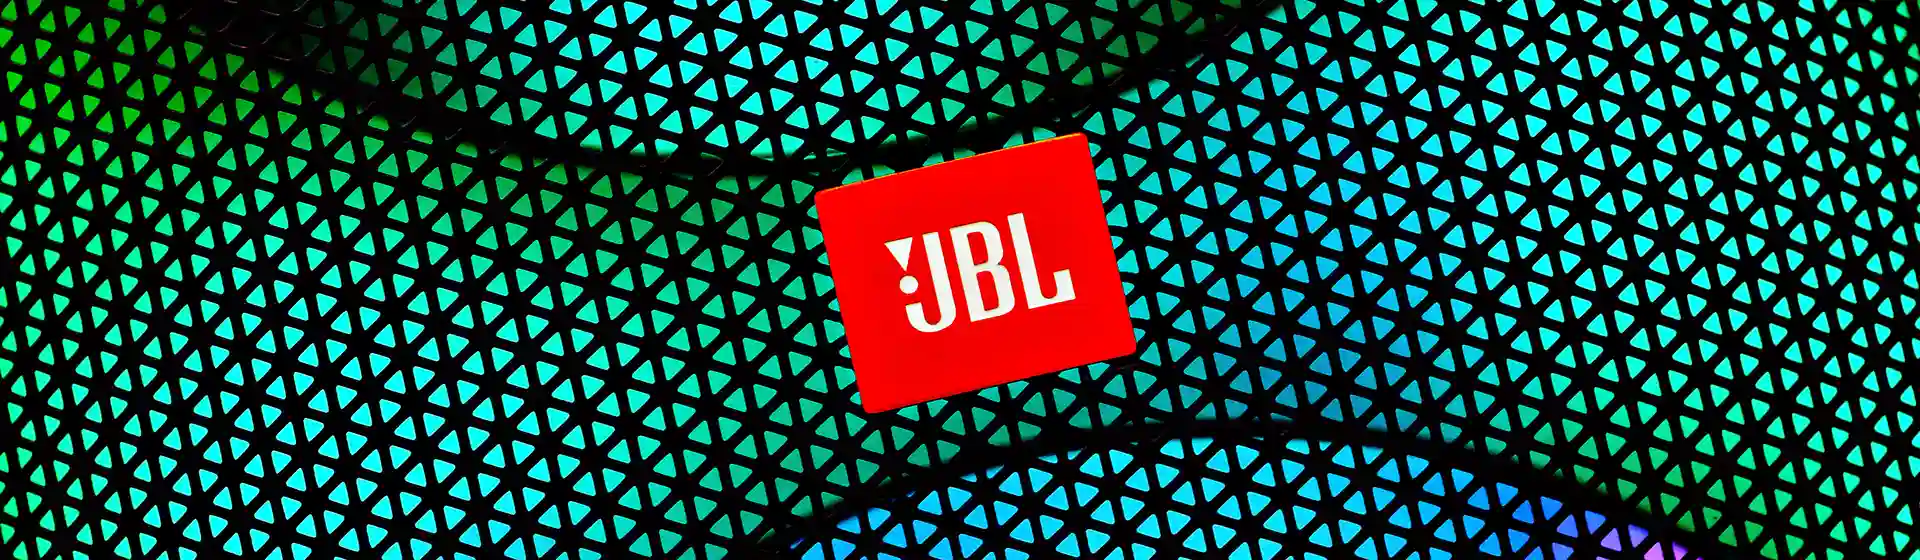 JBL na Black Friday 2021: veja produtos que vão entrar em promoção